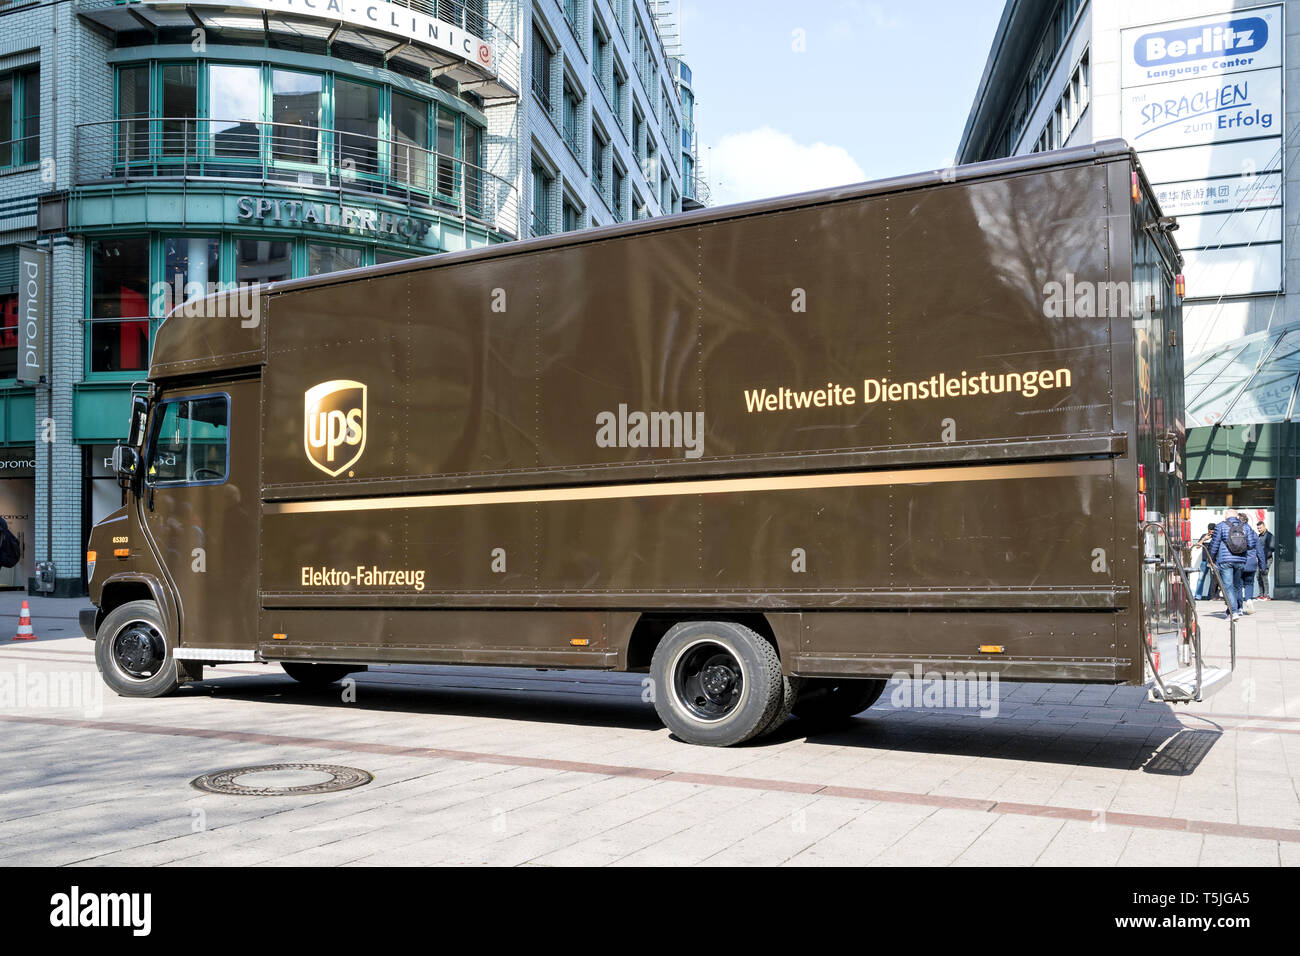 Alimentazione elettrica di consegna UPS van. UPS è il più grande del mondo di società di consegna di pacchi e di un provider di soluzioni per la gestione della catena di fornitura. Foto Stock